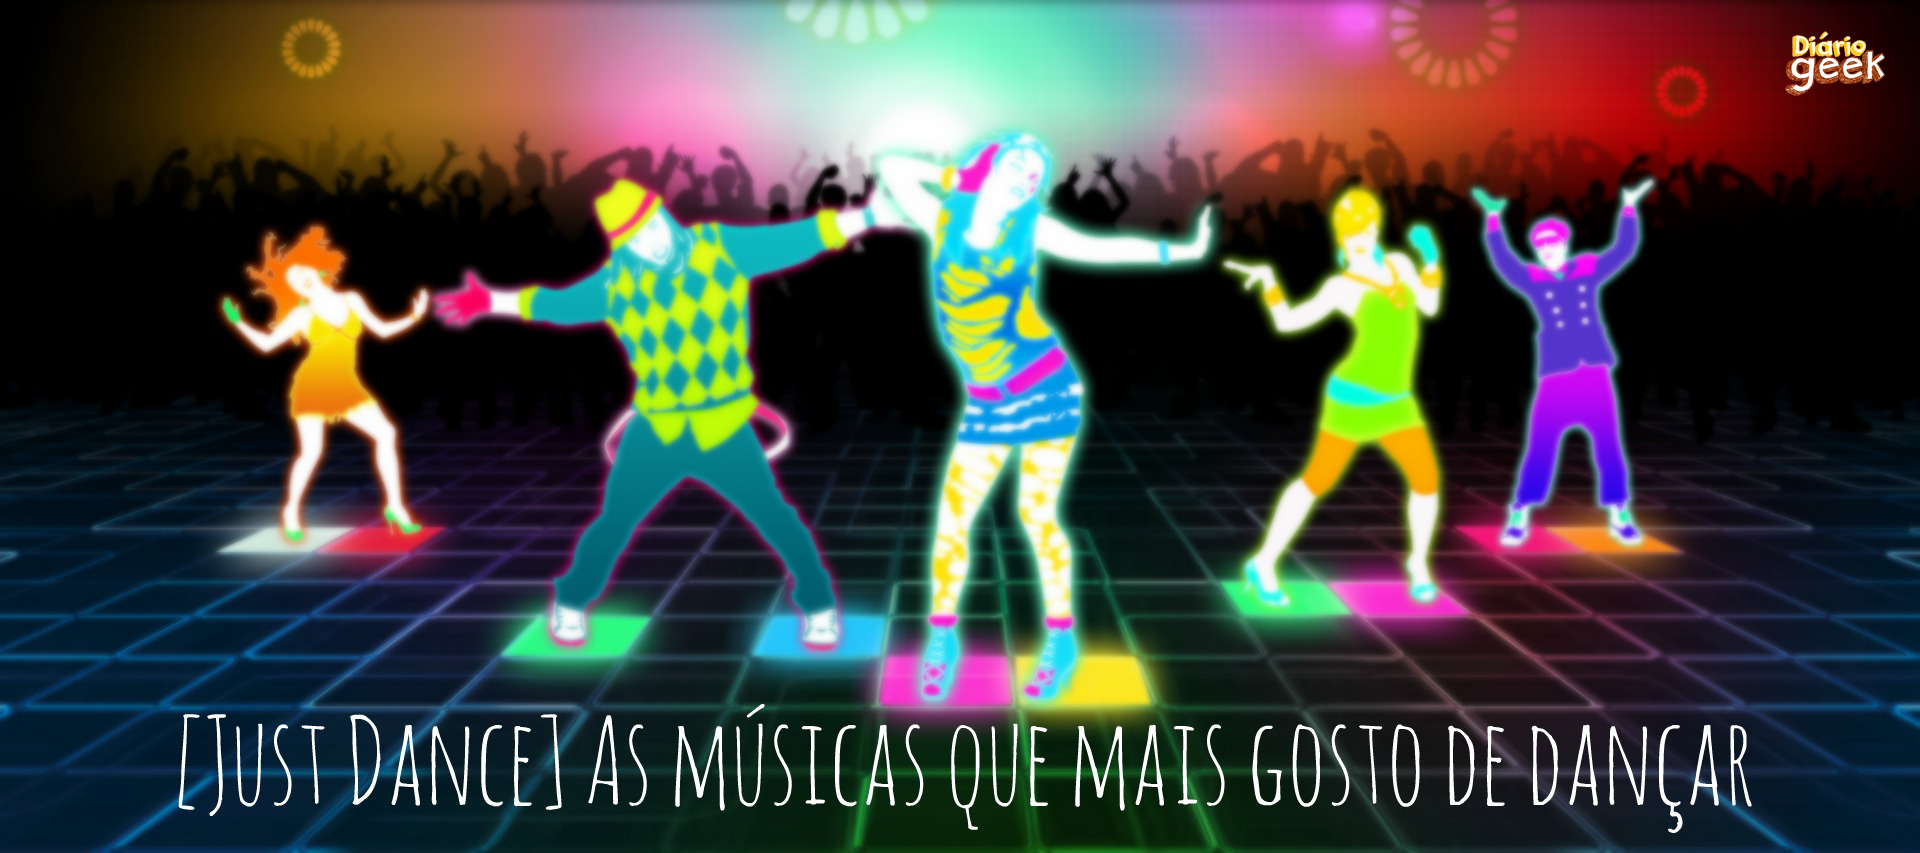 Just Dance] As músicas que mais gosto de dançar – Diário Geek